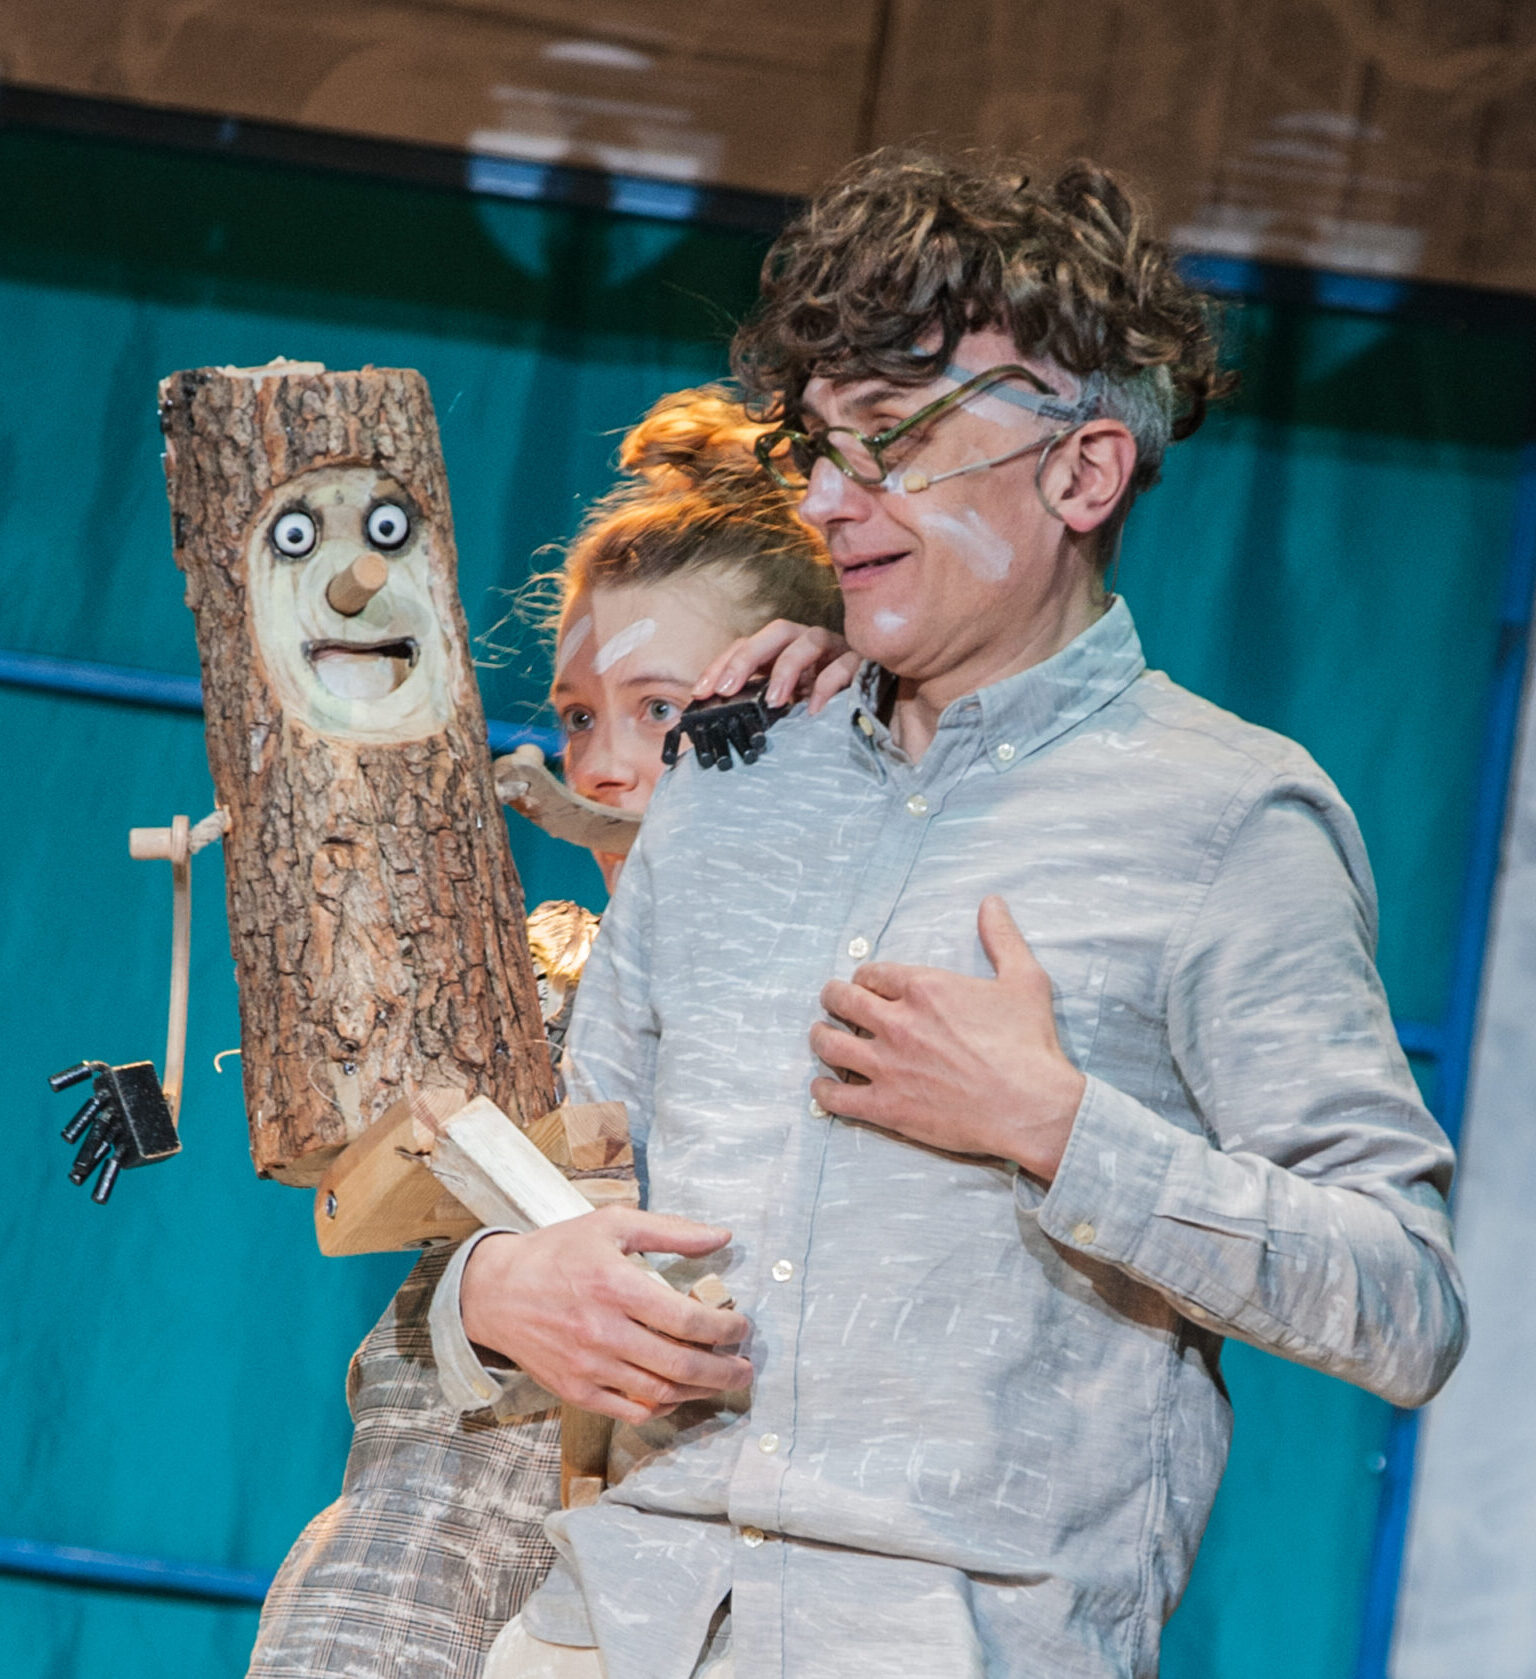 Zdjęcie ze spektaklu Pinokio. Na niebieskim tle dwie posatcie wpatrzone w drewnianą lalkę - Pinokia. Mężczyzna wygląda na wzruszonego i trzyma się za serce.